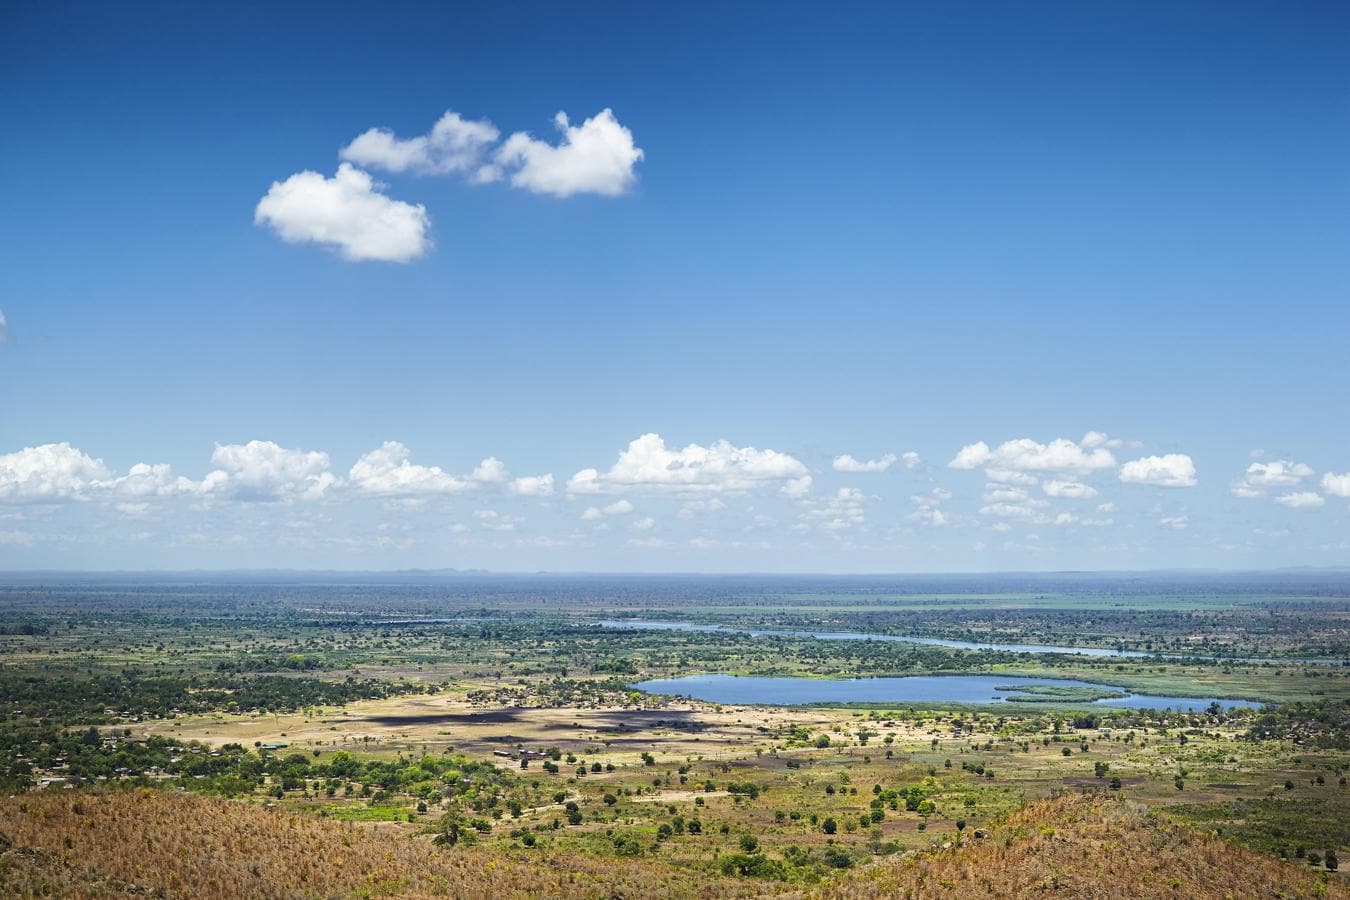 Malaui. En los últimos años Malaui se ha convertido en uno de los destinos de fauna más completos del continente africano. La Majete Wildlife Reserve cuenta con los ‘cinco Grandes’, el Liwonde National Park, situado al este del país, ofrece una observación increíble de fauna en el río y la Nkhotakota Wildlife Reserve, que lleva a cabo grandes labores de reubicación de animales, enamoran a todo viajero. Además de este tipo de destinos, perfectos para realizar un safari, está el lago Malawi – el lago tropical más importante del mundo–, en el que nadar entre bancos de peces. Importante es, también, visitar los diferentes pueblos e interactuar con sus habitantes para conocer, un poco más, de su historia y cultura.